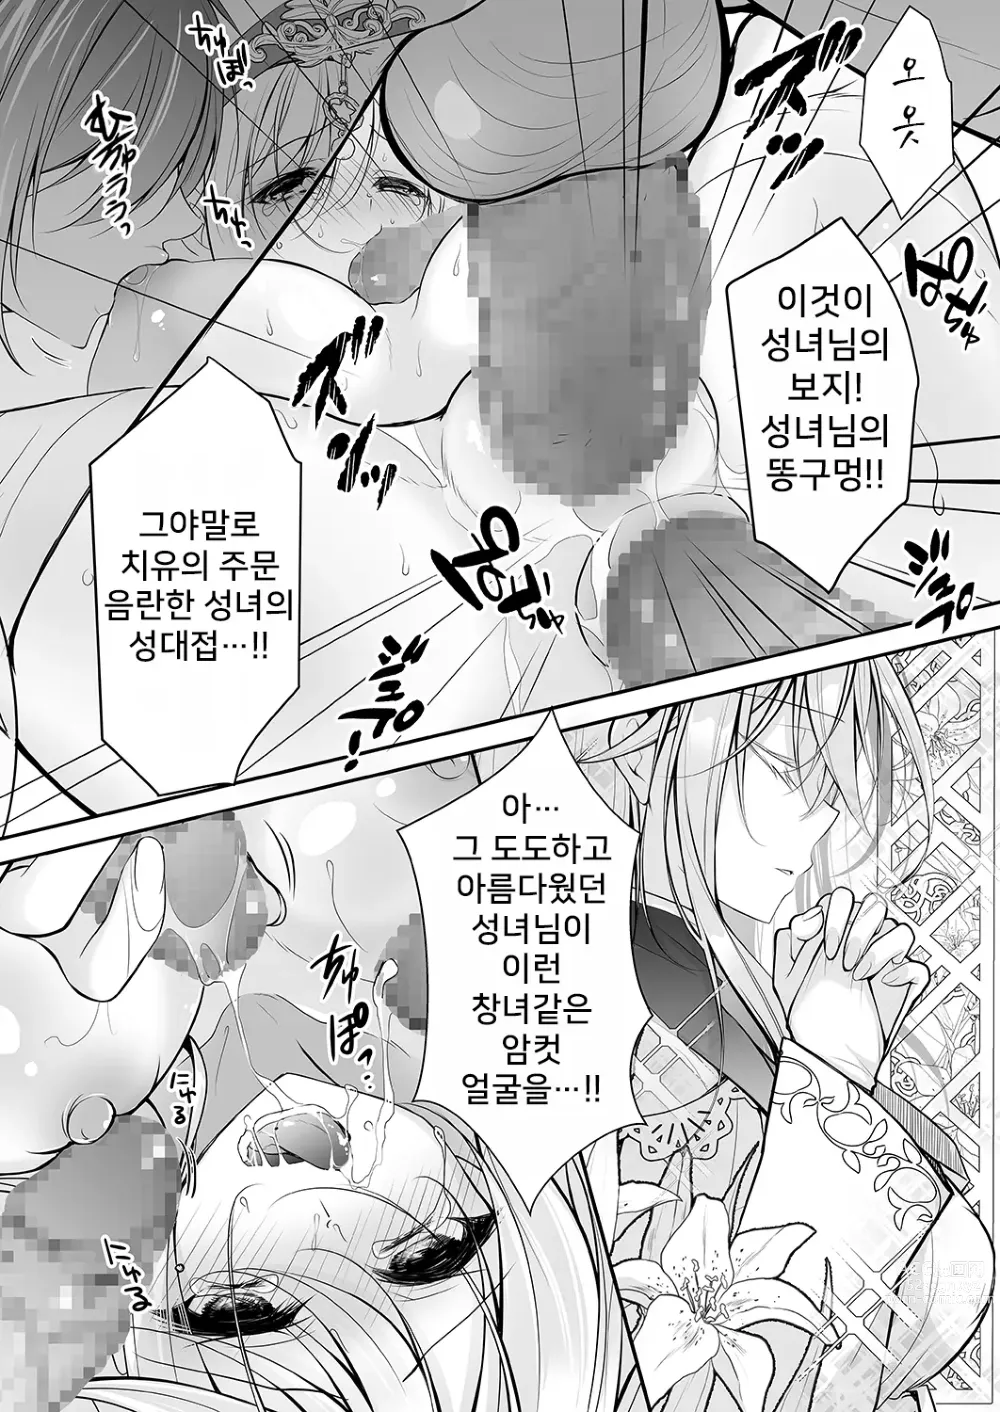 Page 39 of doujinshi 이세계 윤간 ~세뇌당한 성녀는 육변기로 직업변경하여 행복합니다~